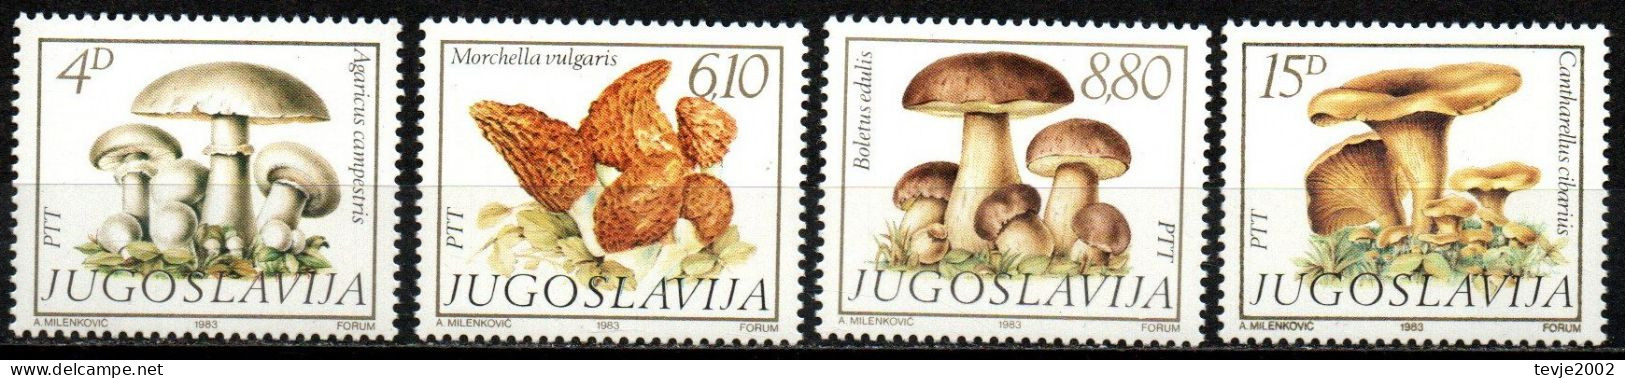 Jugoslawien 1983 - Mi.Nr. 1977 - 1980 - Postfrisch MNH - Pilze Mushrooms - Champignons